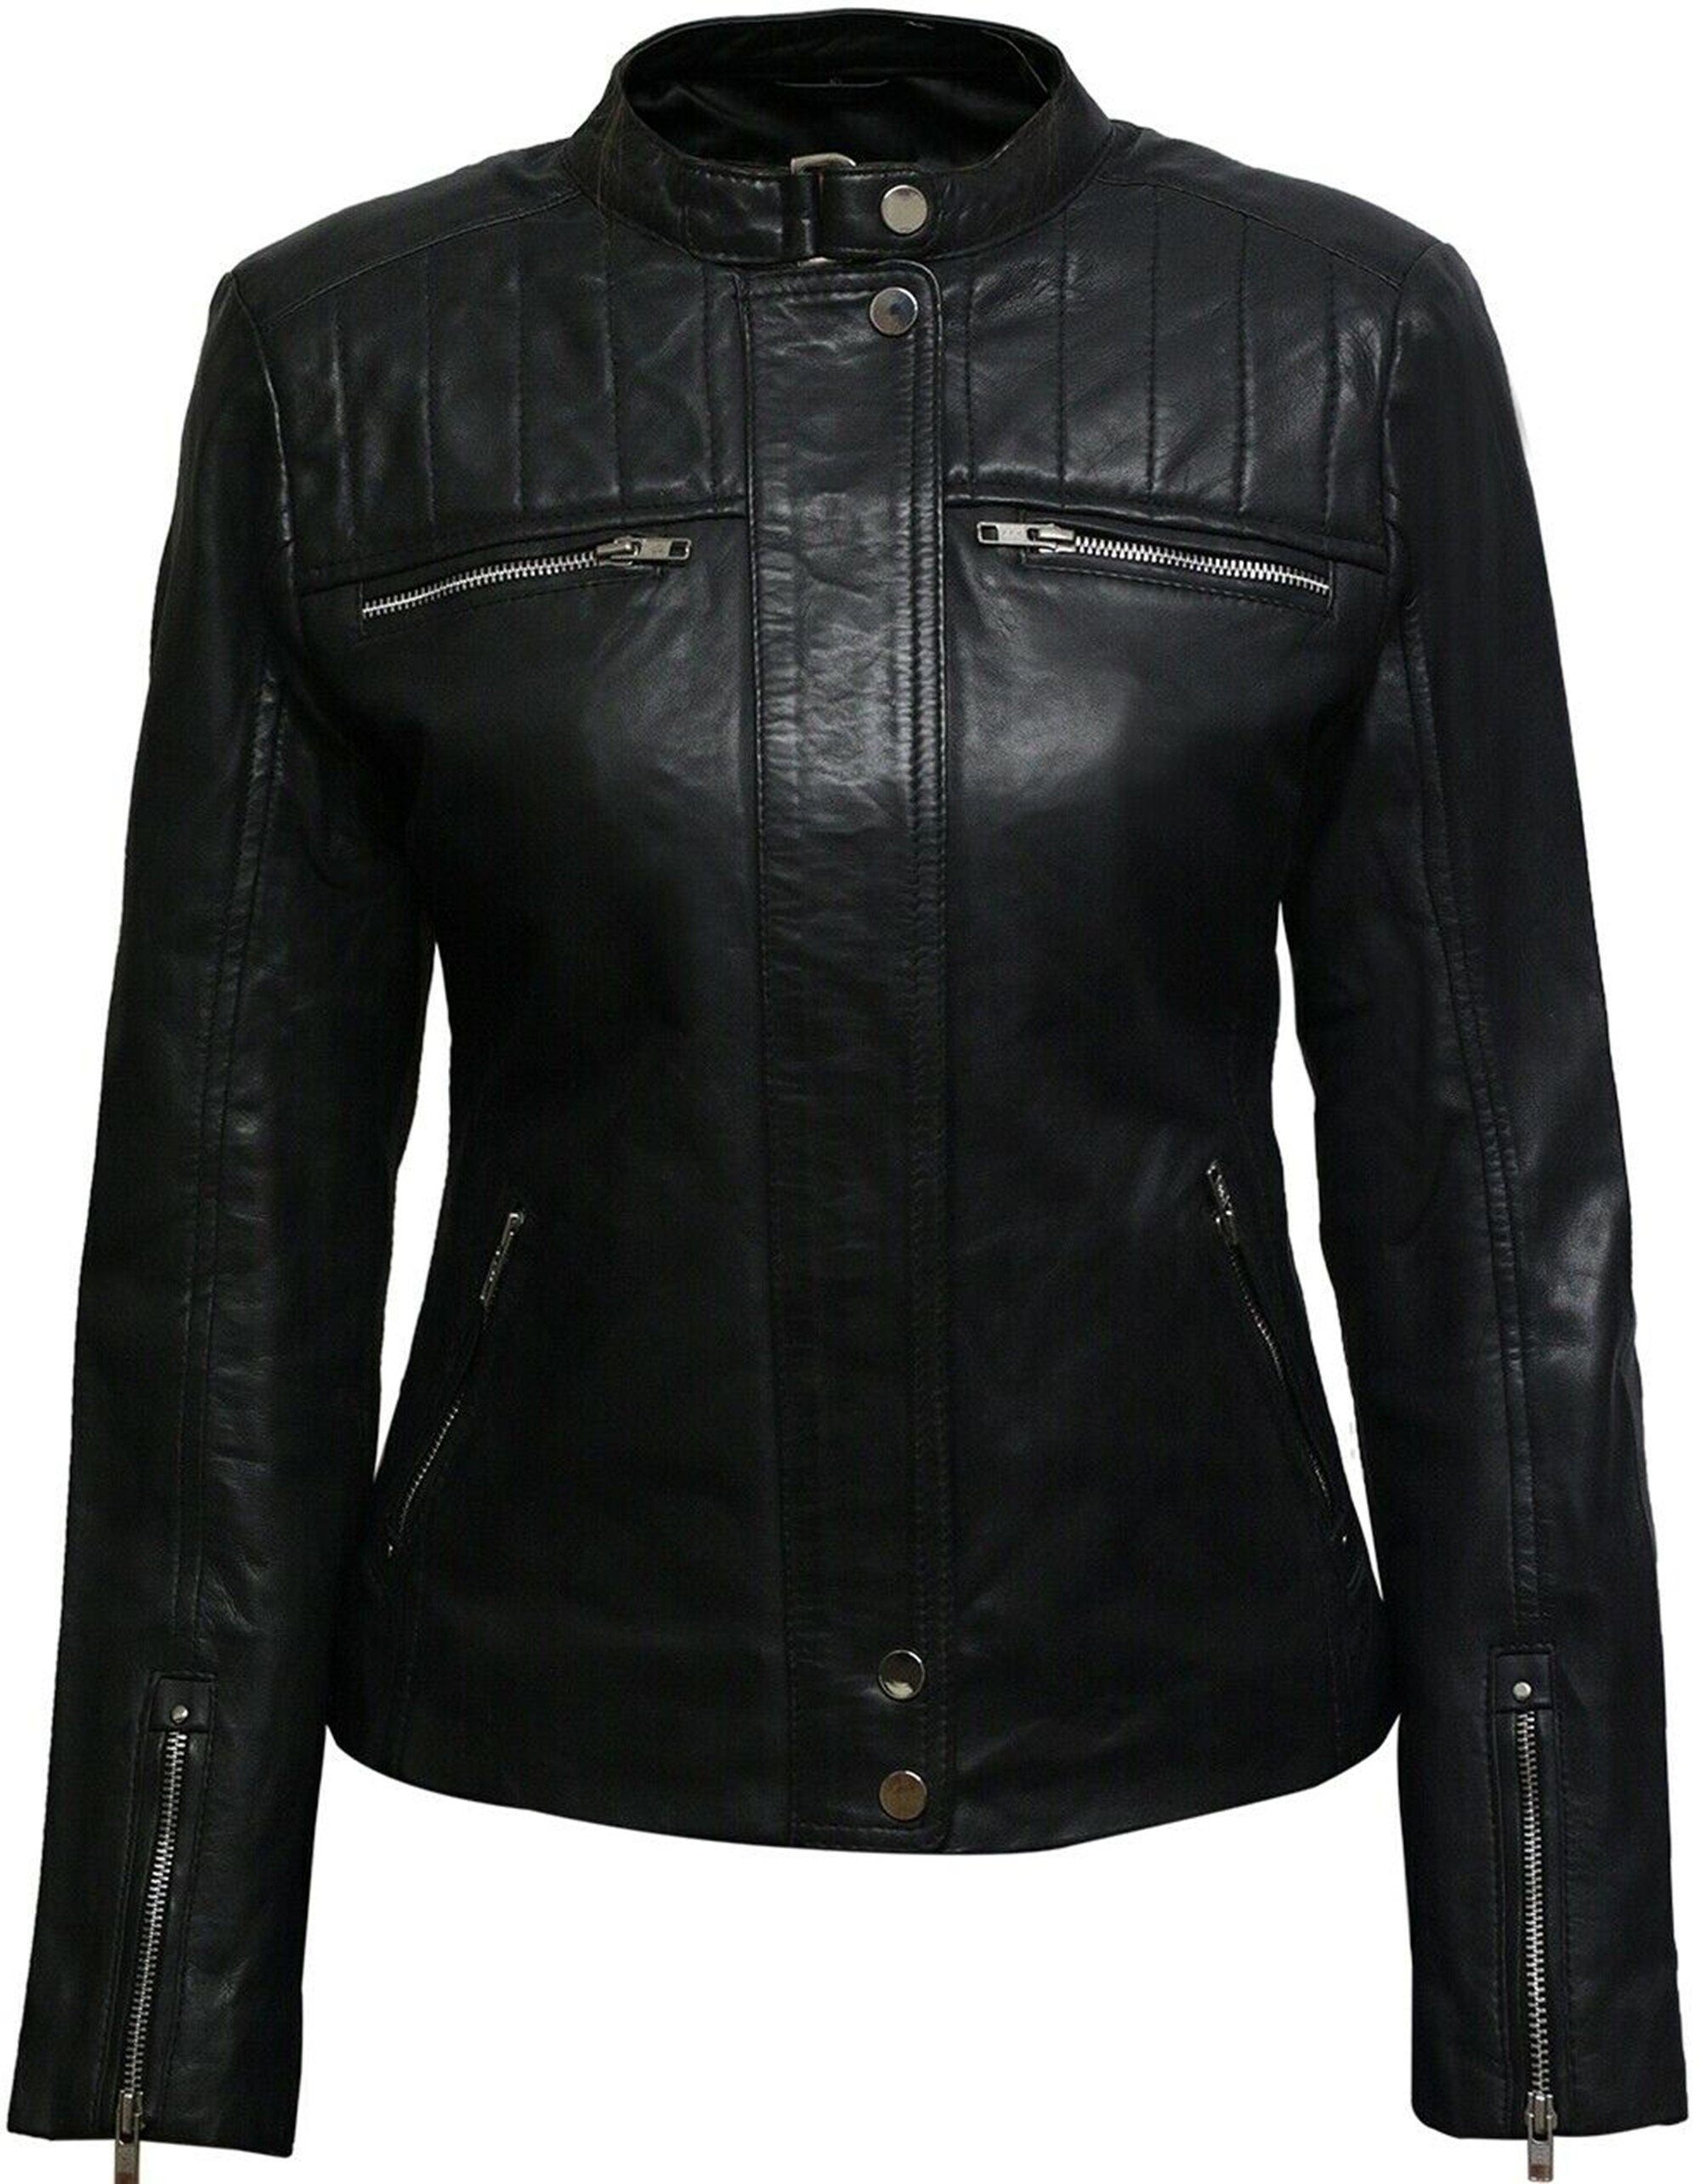 Leather Biker Jacket Women